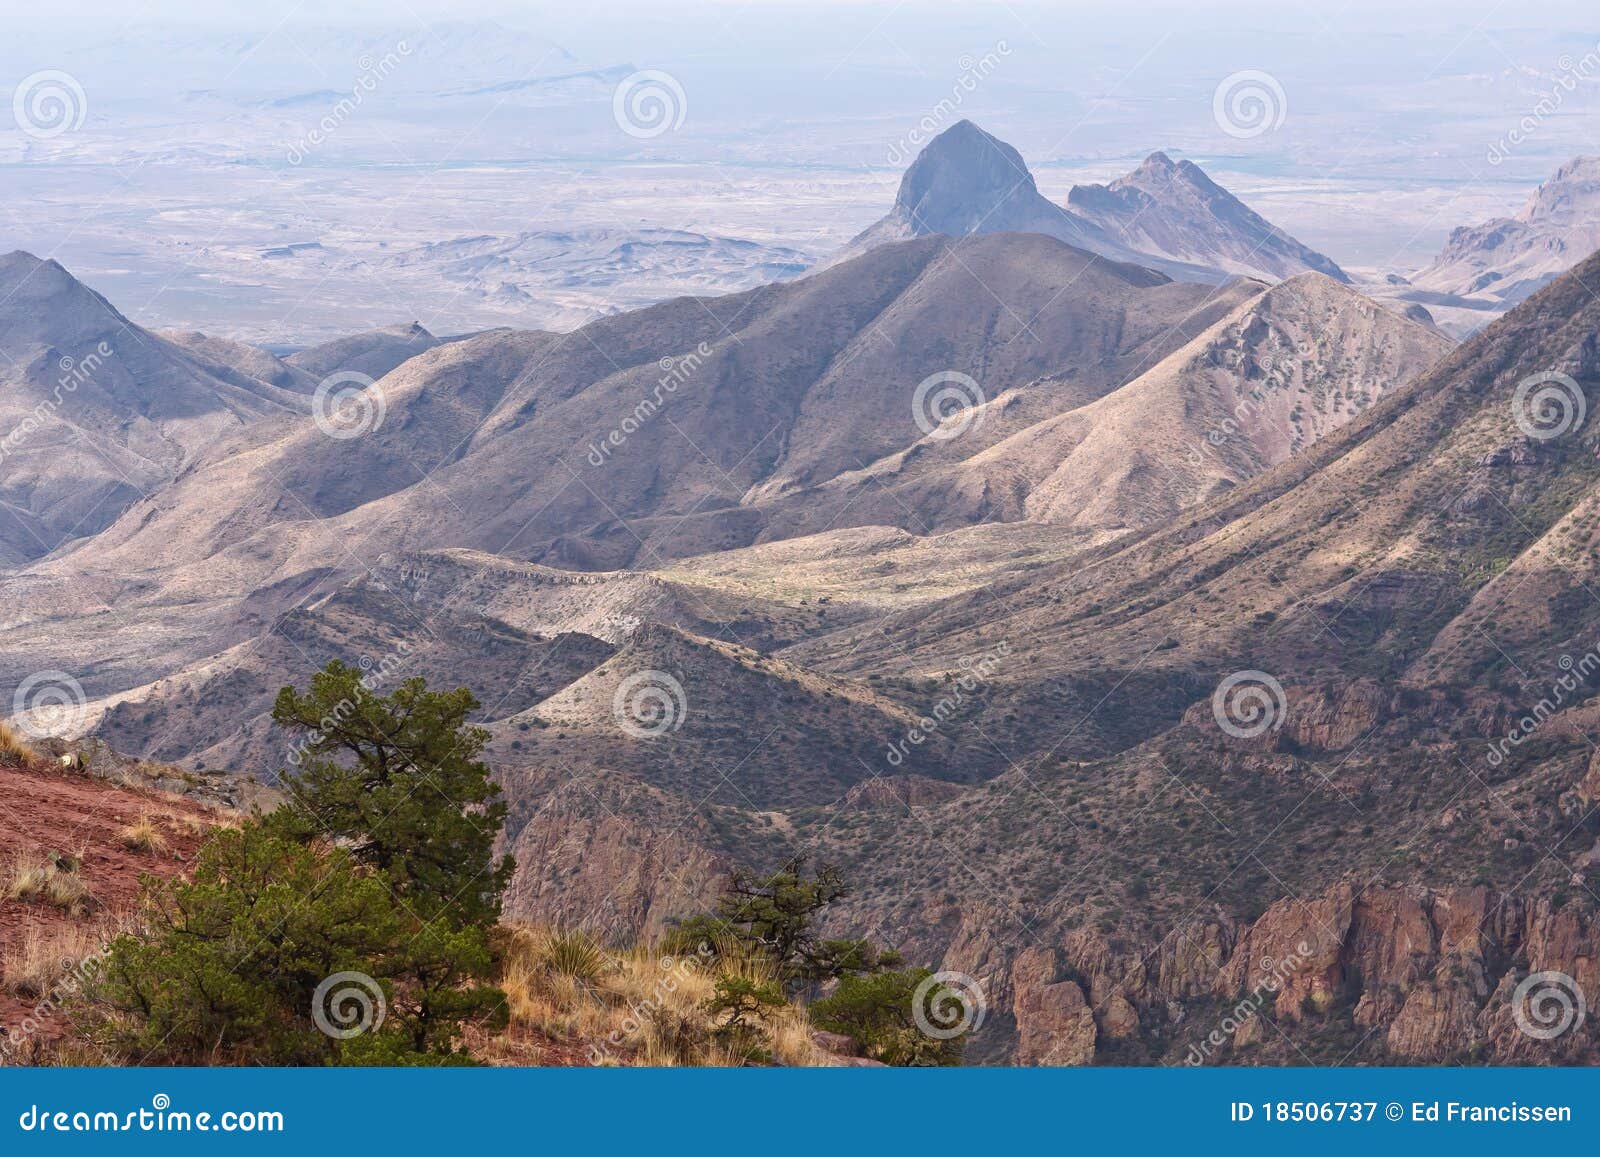 chisos mountains